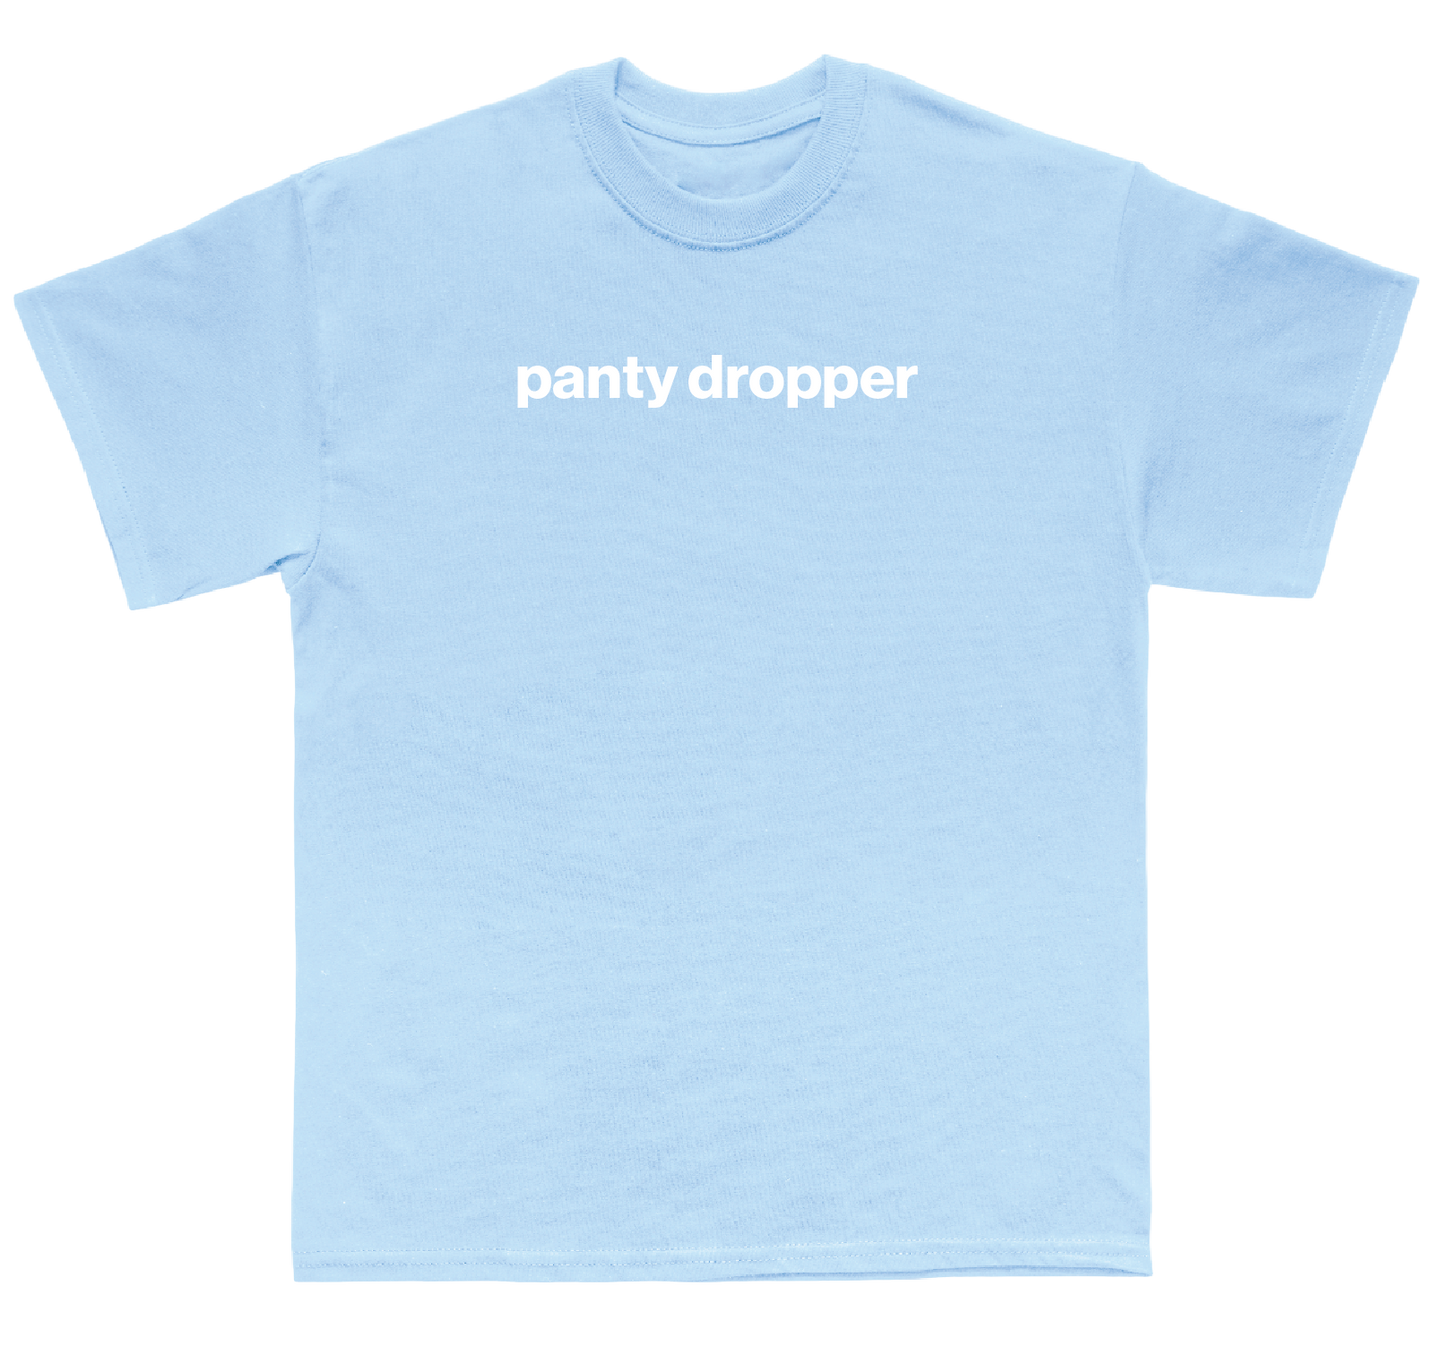 panty dropper shirt